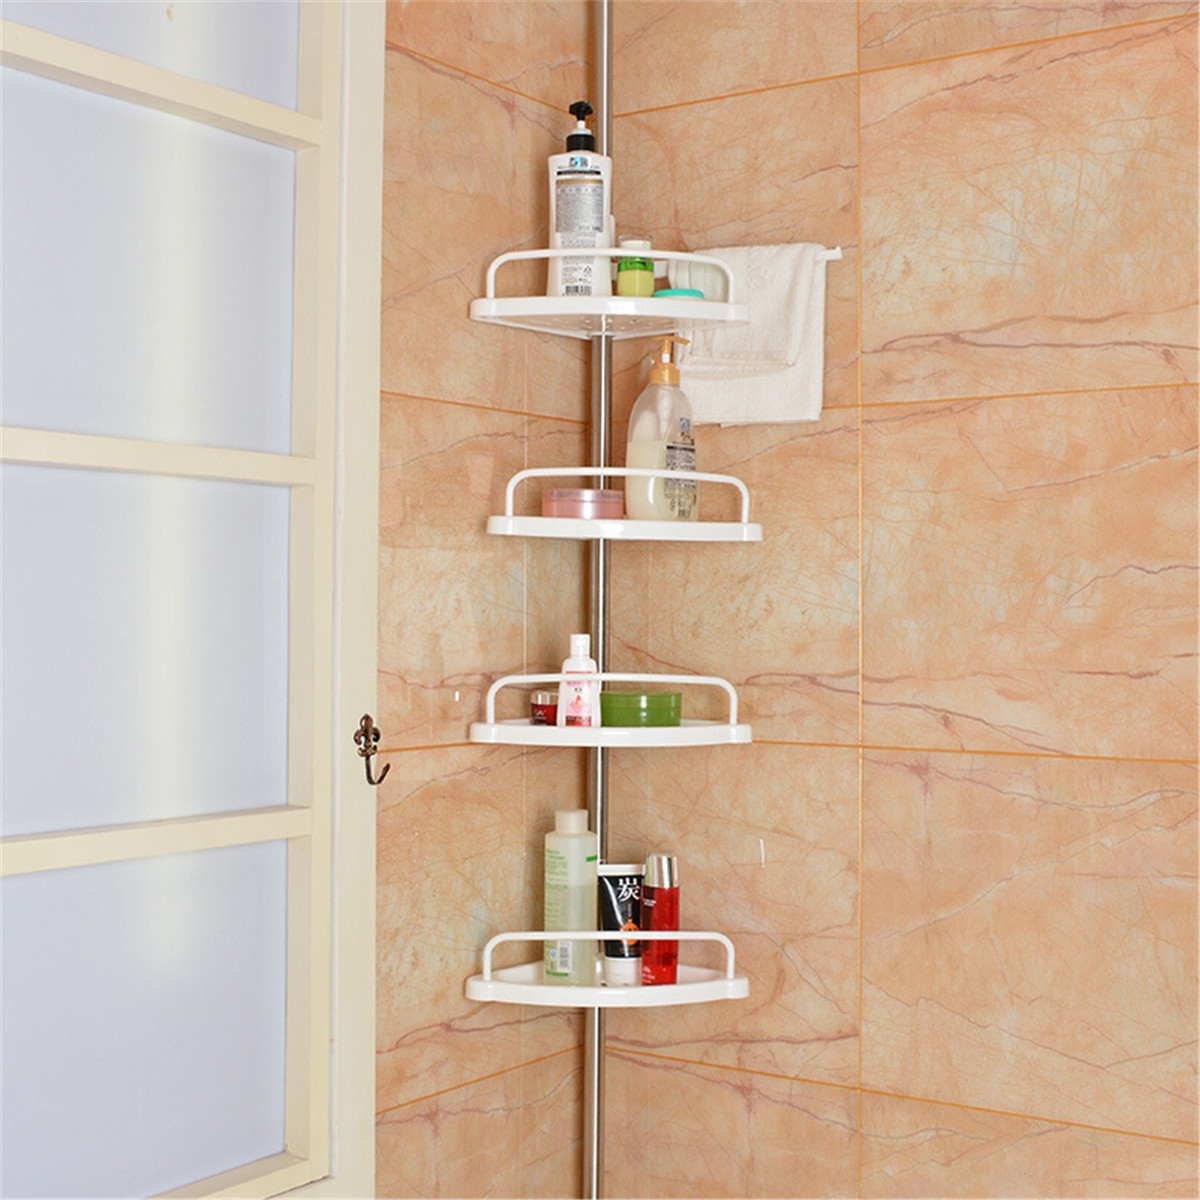 浴室卫生间置物架免打孔顶天立地收纳架厨房储物不锈钢伸缩